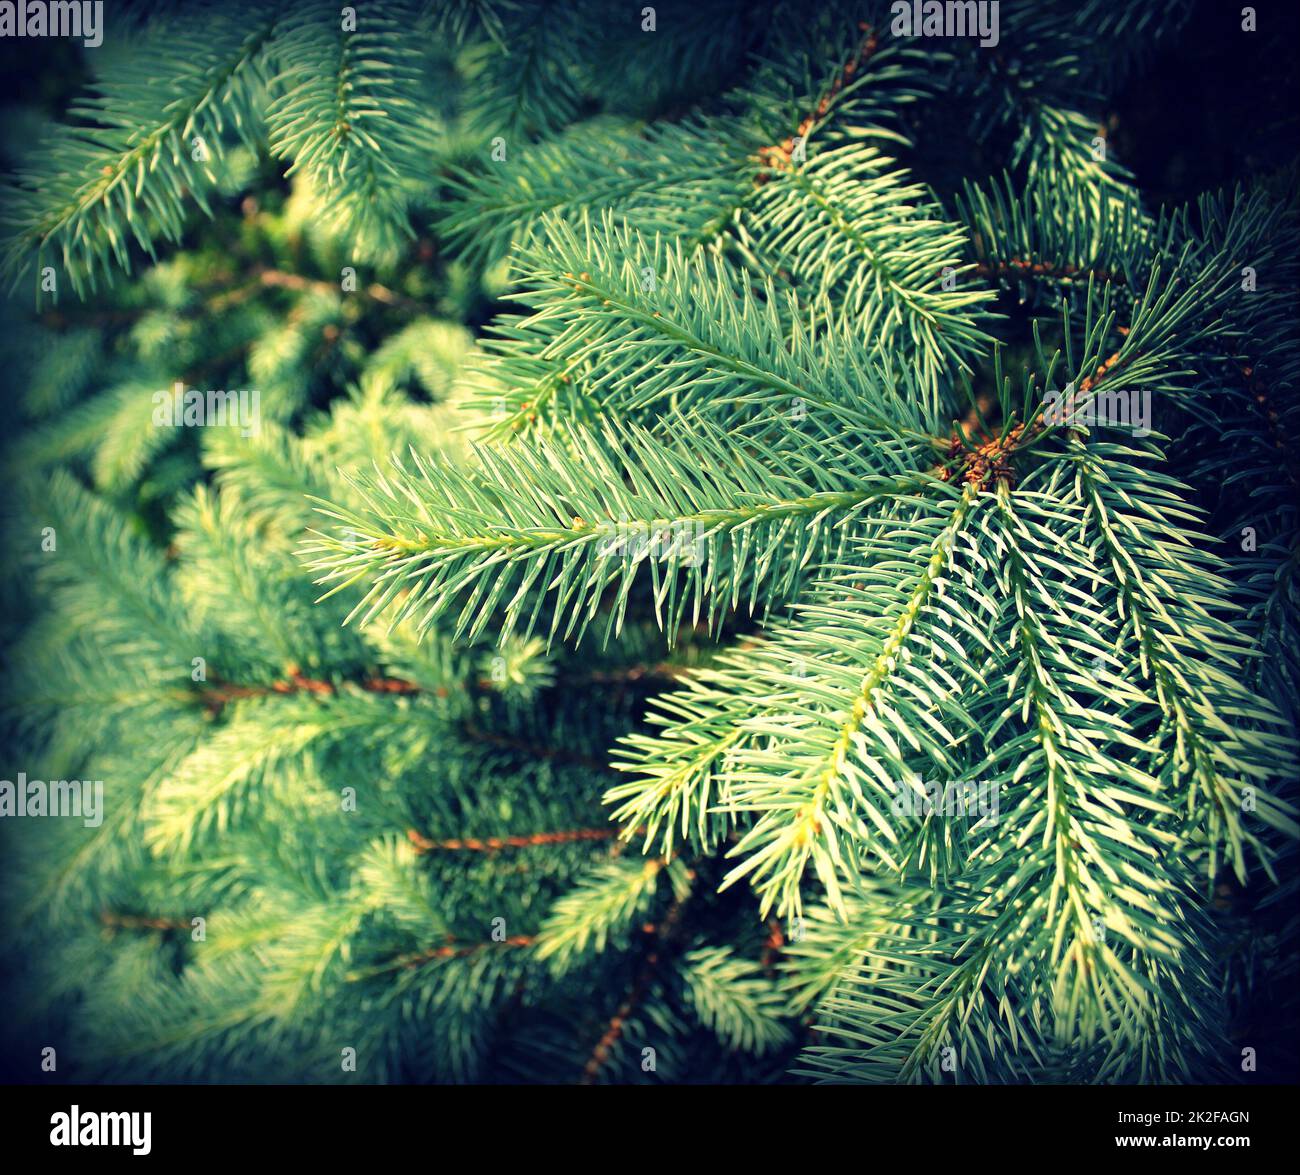 Fir tree brunch close up. Shallow focus. Fluffy fir tree brunch close up. Christmas wallpaper concept Stock Photo